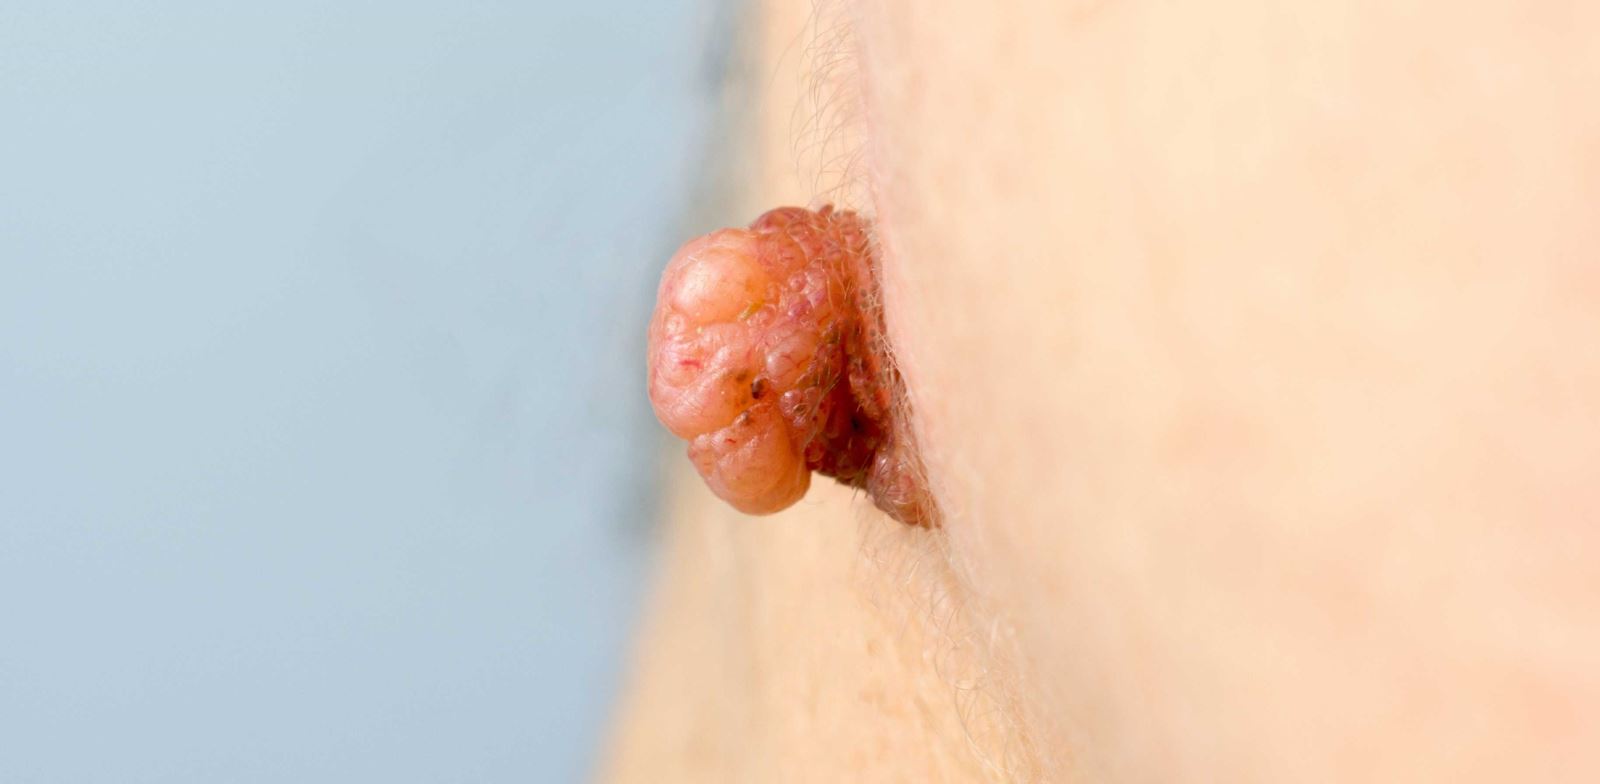 En sık görülen hpv belirtisi genital siğillerdir.